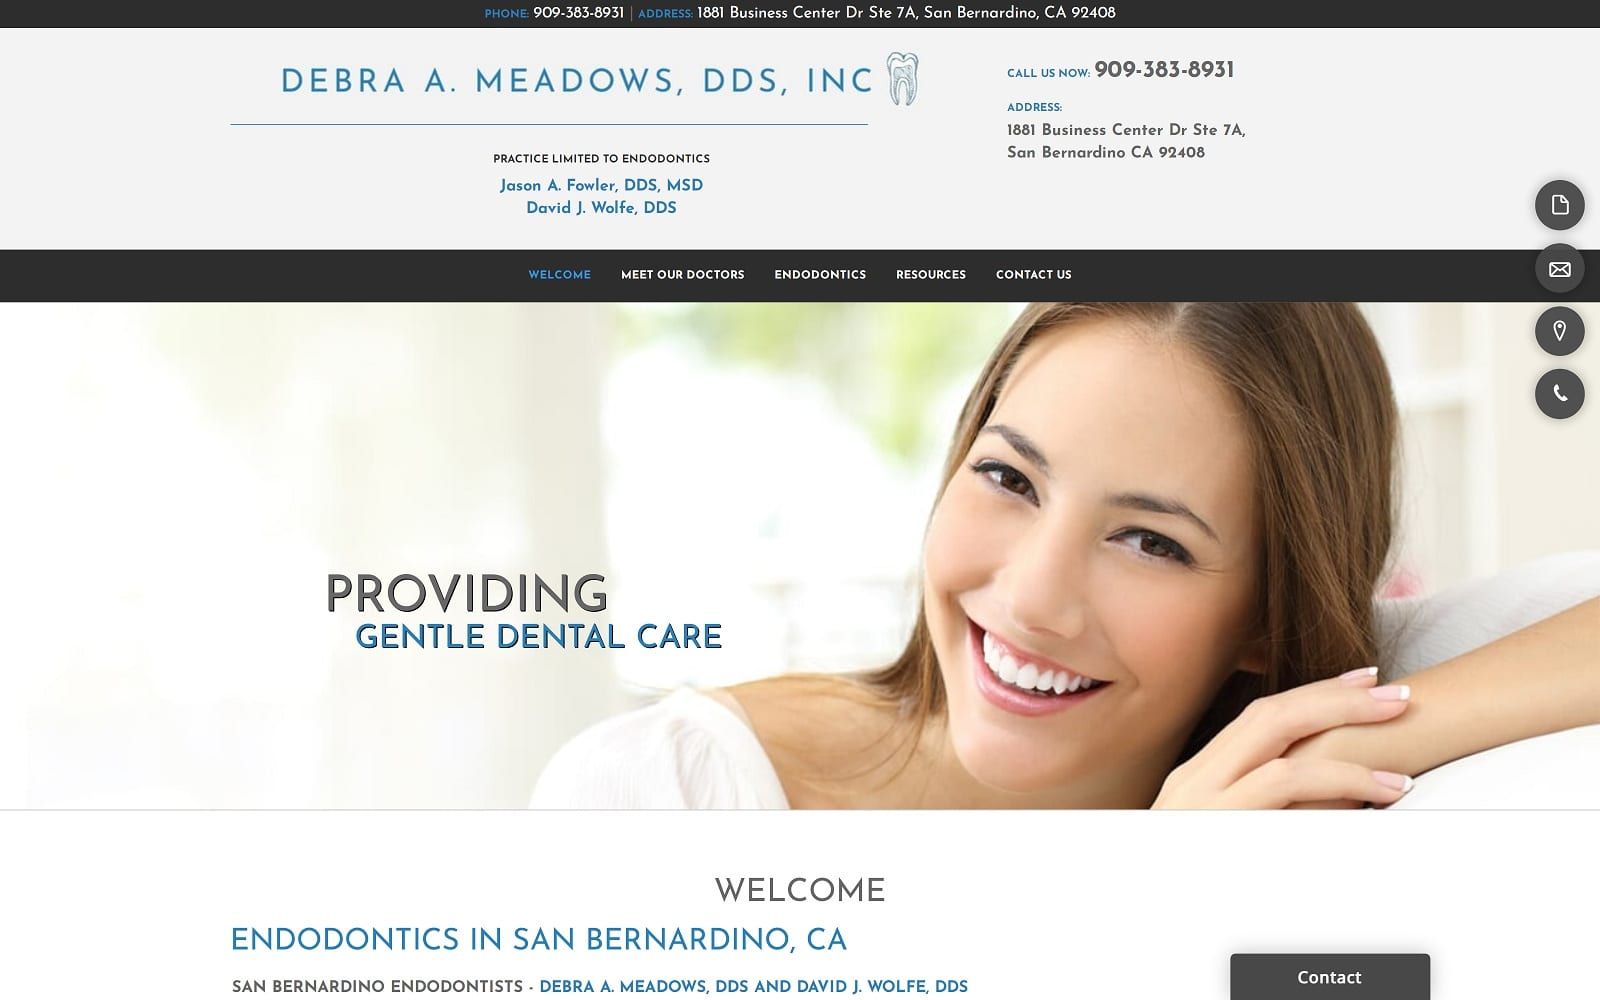 The Screenshot of Debra A. Meadows, DDS meadowsandwolfeendo.com Website